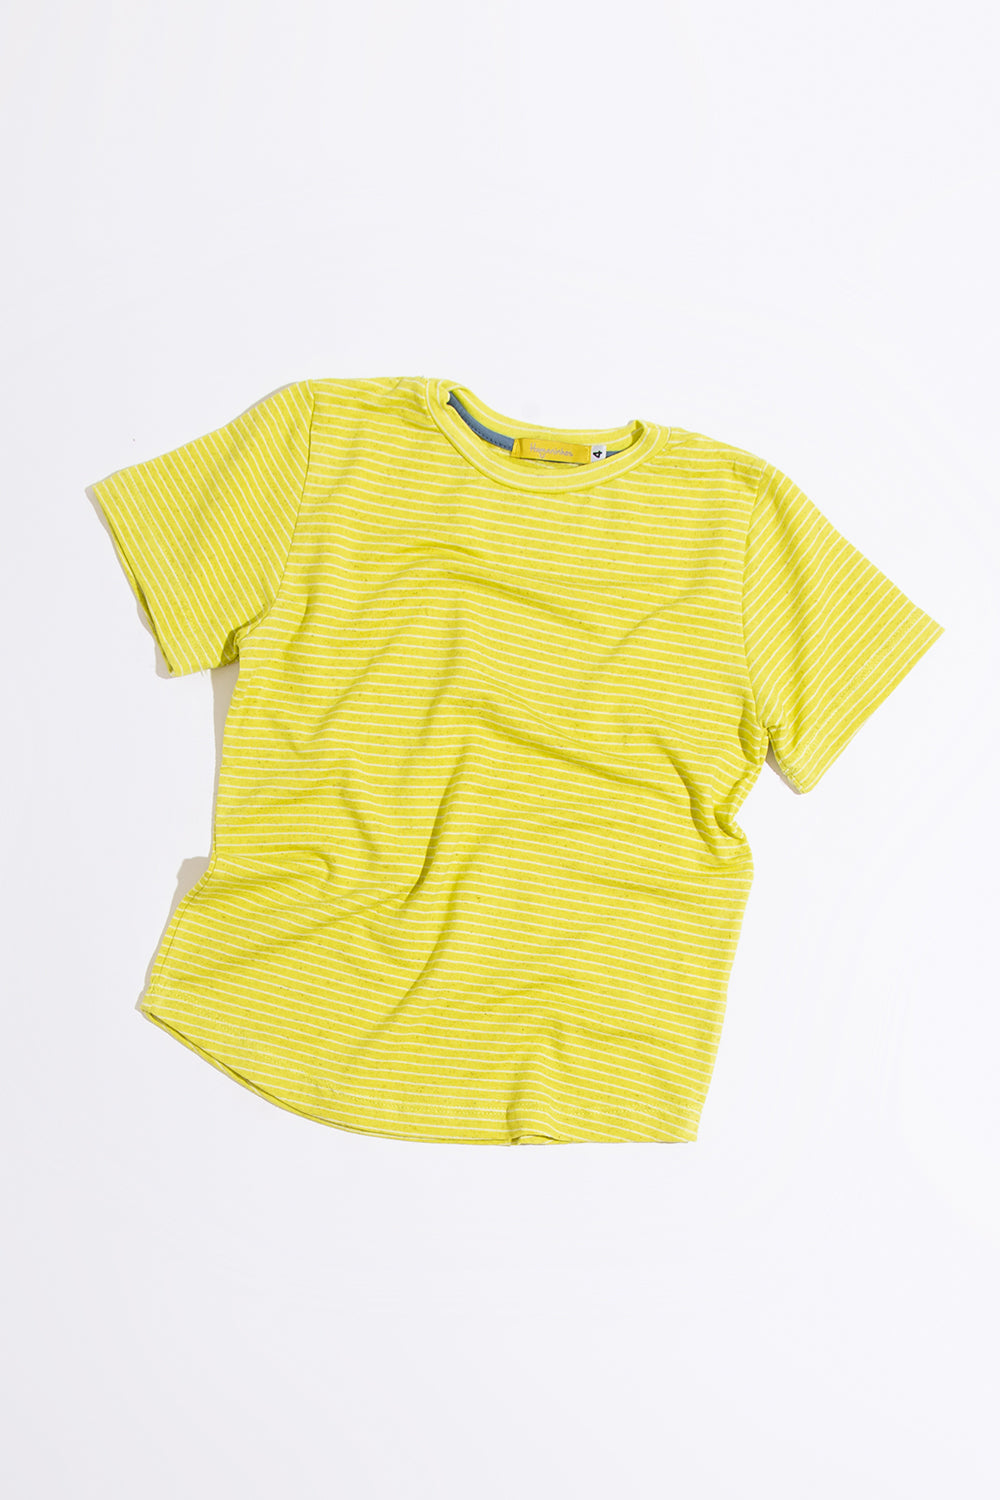 Camiseta Infantil MC Verde Limão